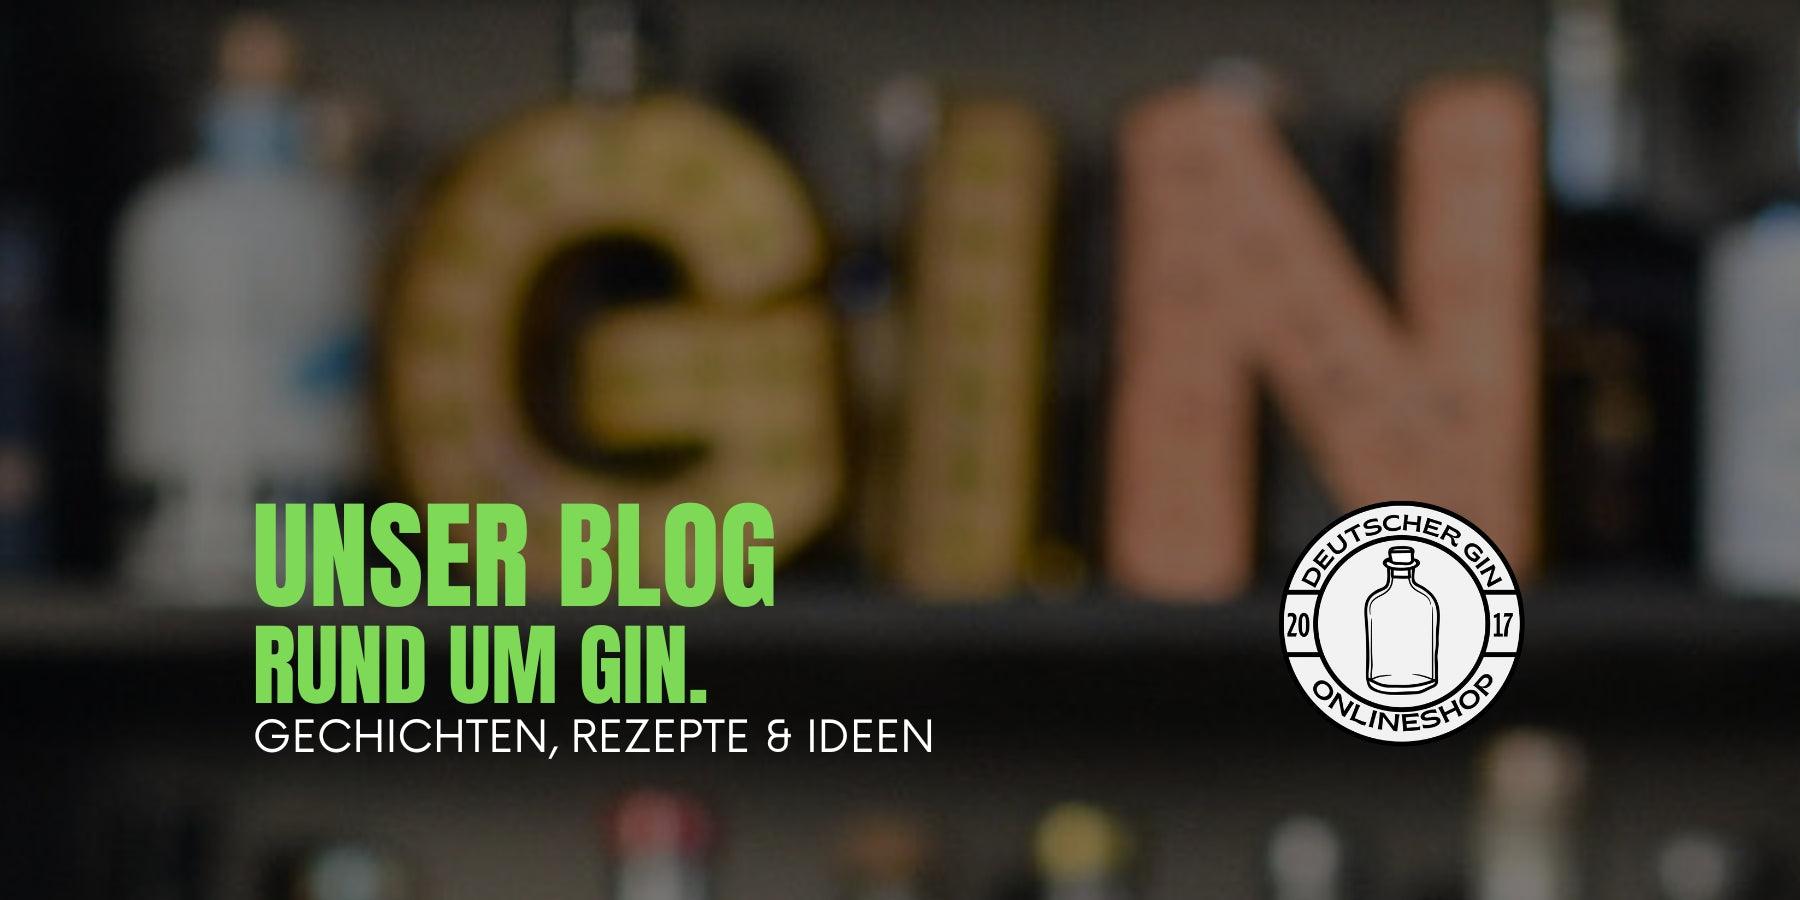 20 Der Besten Gin Bars in Deutschland - Deutschergin.de